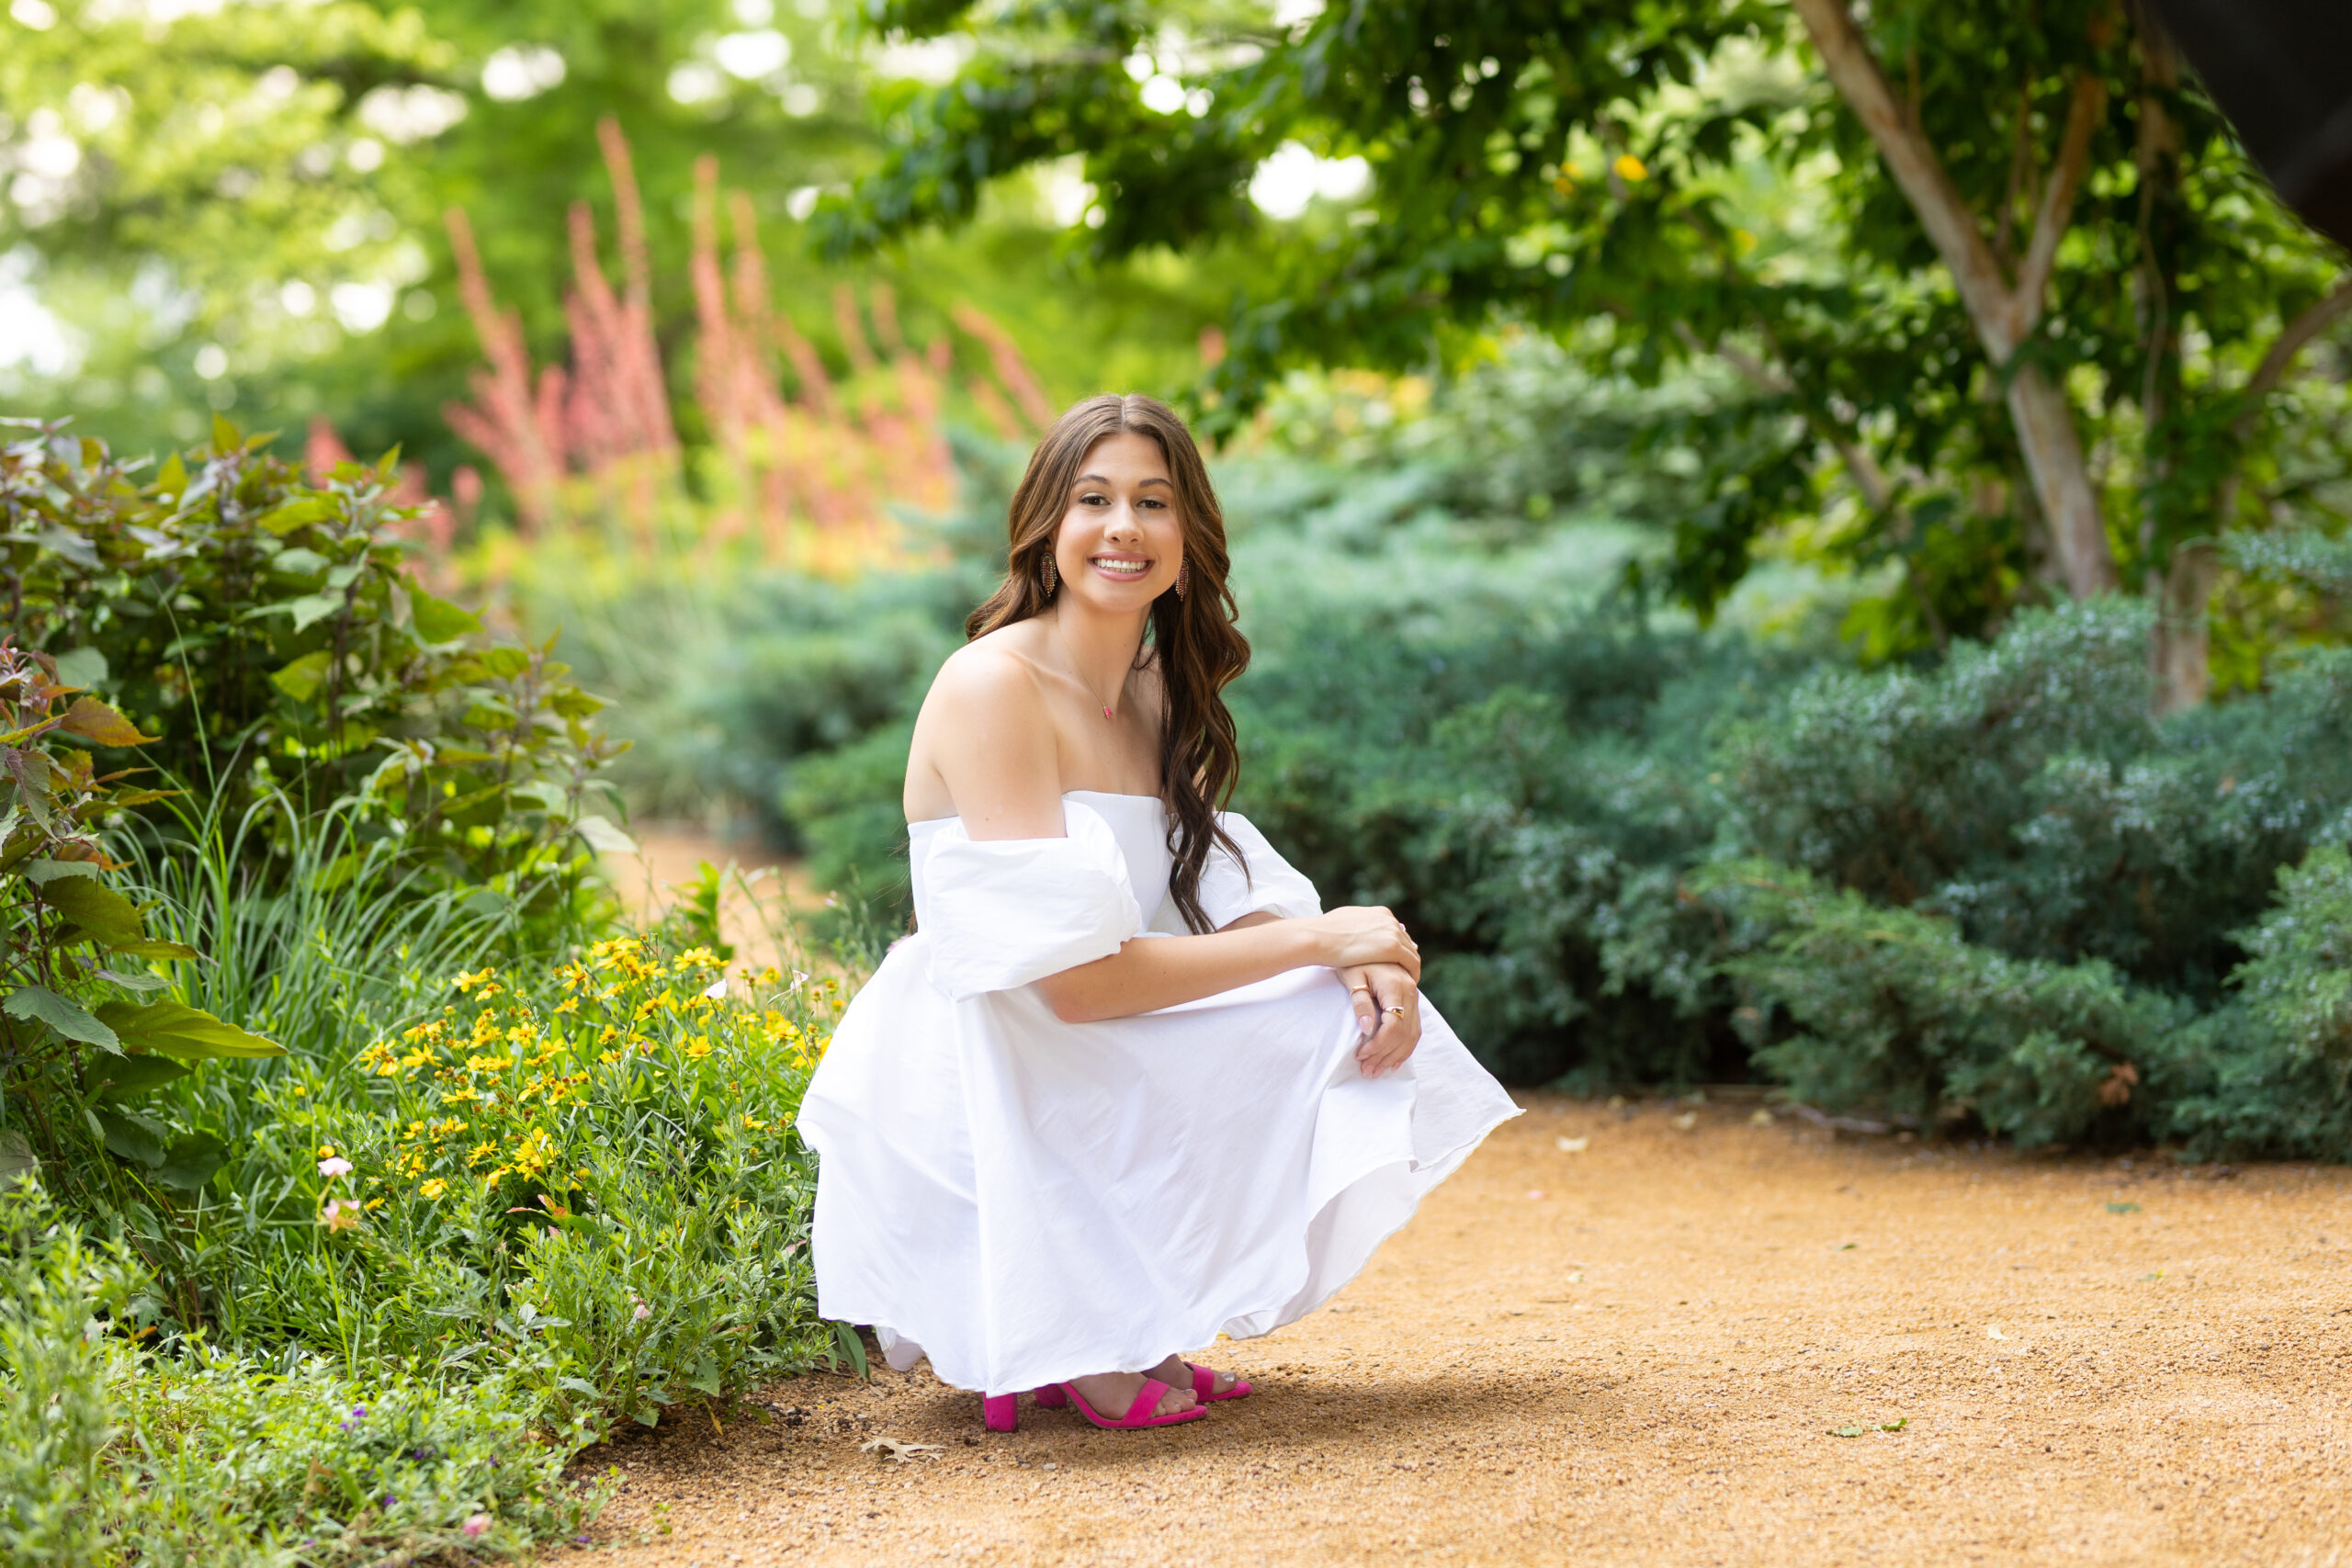 senior girl posing in a flower garden for her senior pictures wearing a white dress